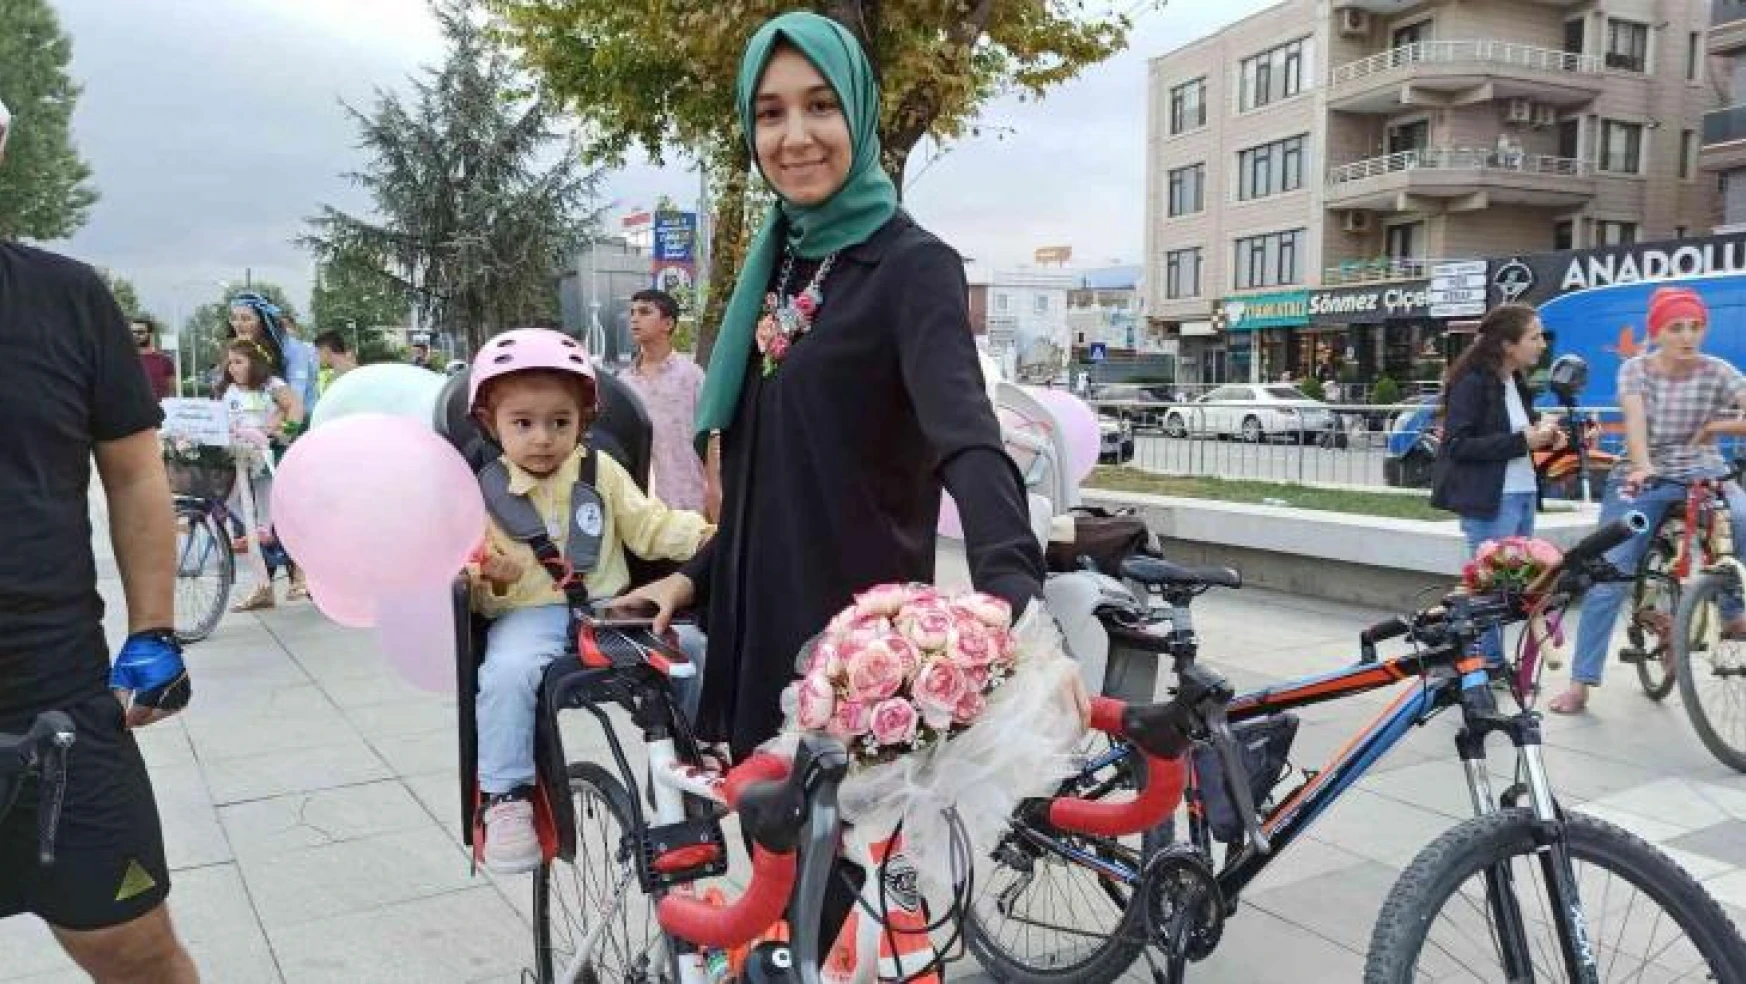 Rengarenk süslenen bisikletlerle şehir turu attılar